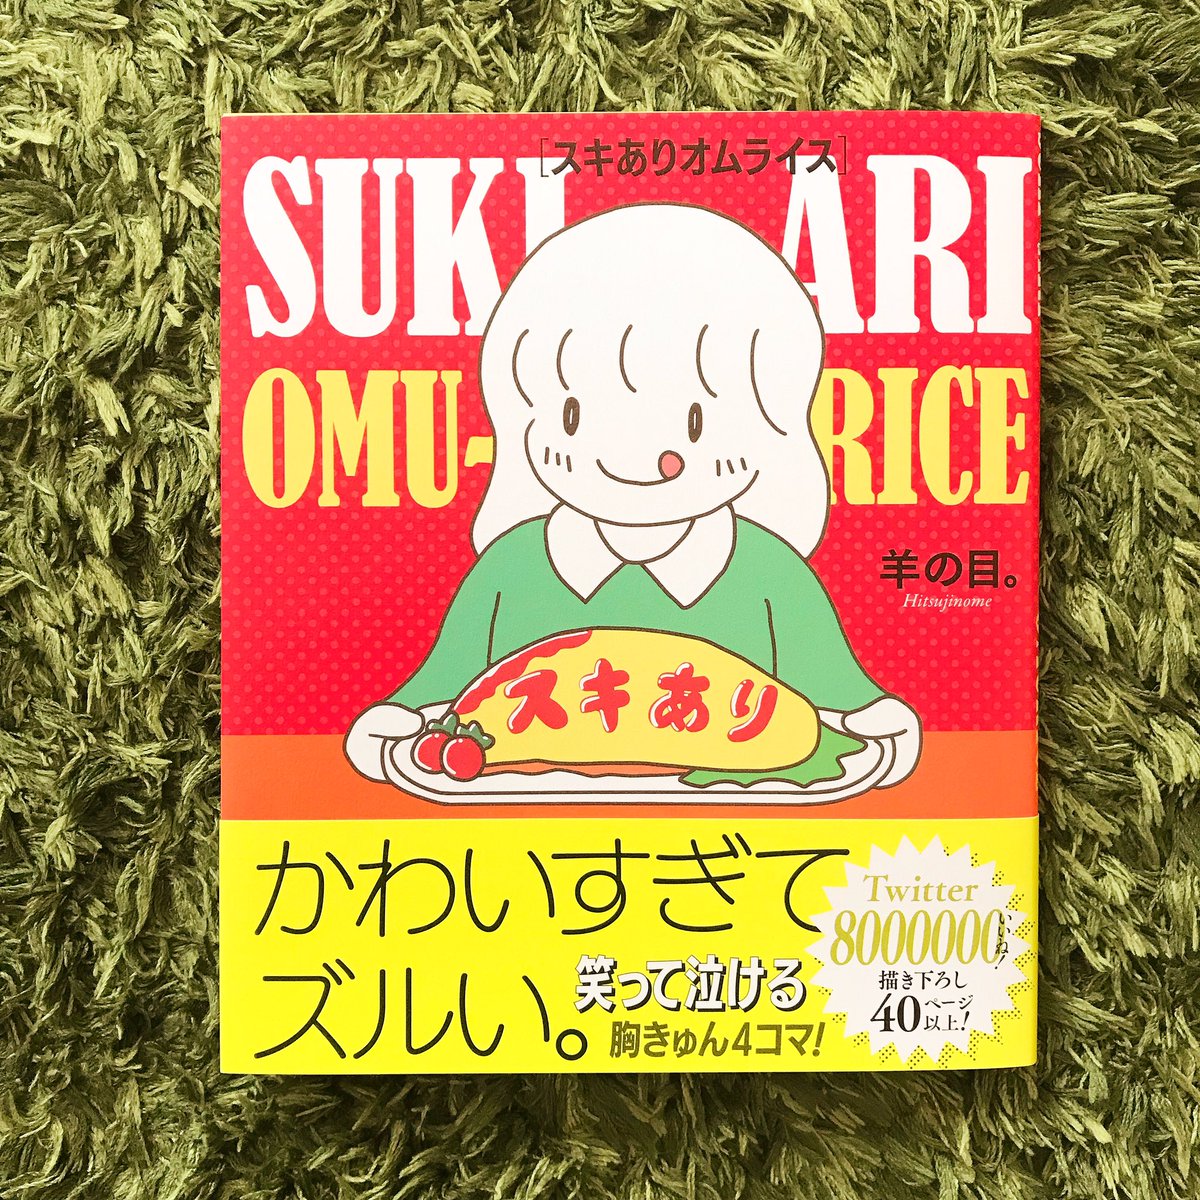 羊の目。さん(@odorukodomo8910 )から素敵な本をいただきました❣️
ありがとうございます☺️
ほっこりニッコリしちゃう
お話とキャラクターたちが
たくさん〜〜?
みなさまもぜひ?

 #スキありオムライス 